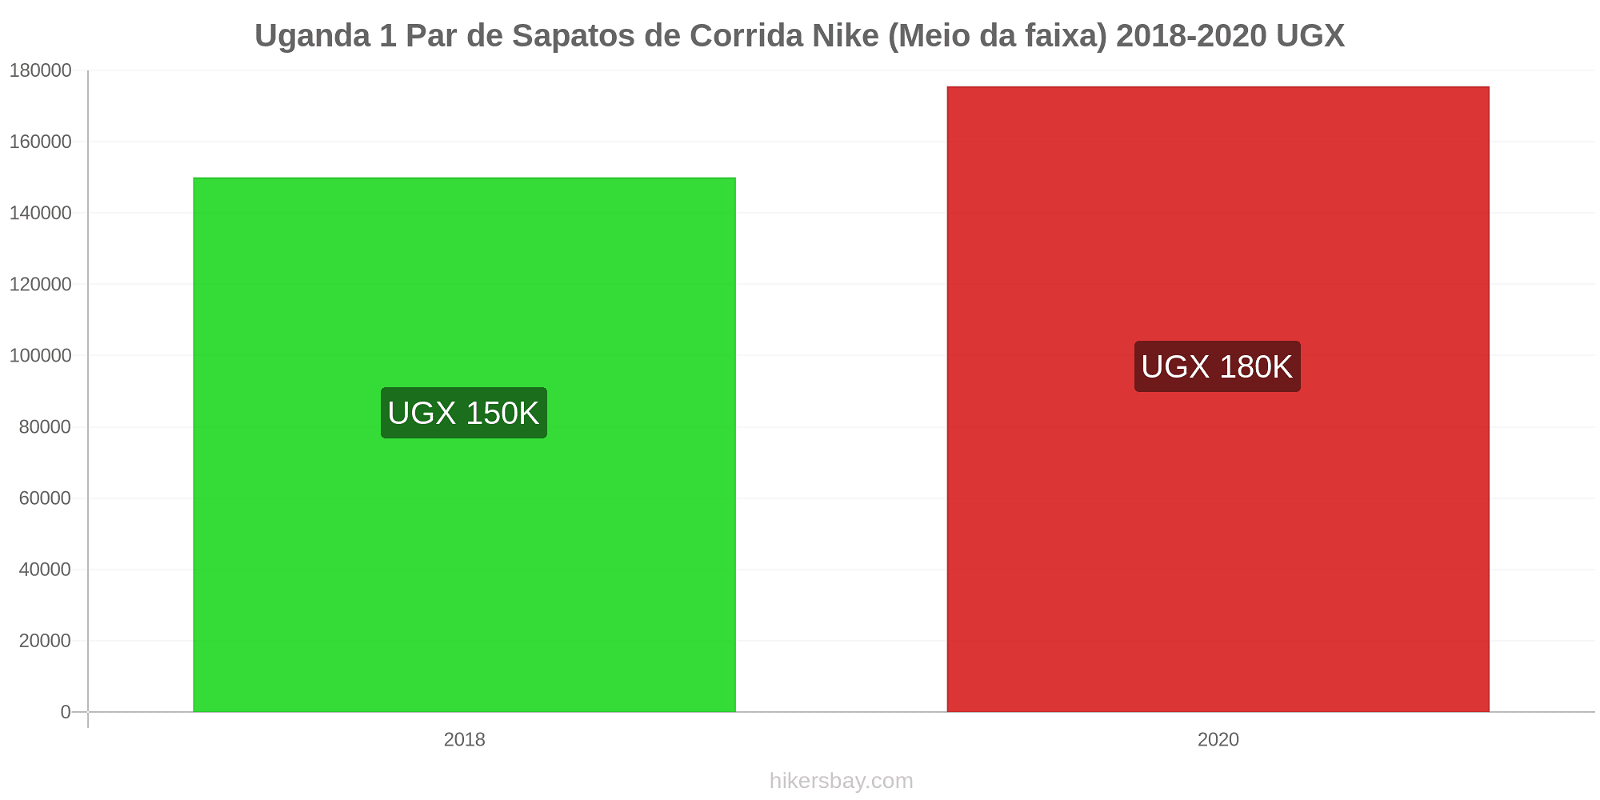 Uganda variação de preço 1 par de tênis Nike (mid-range) hikersbay.com